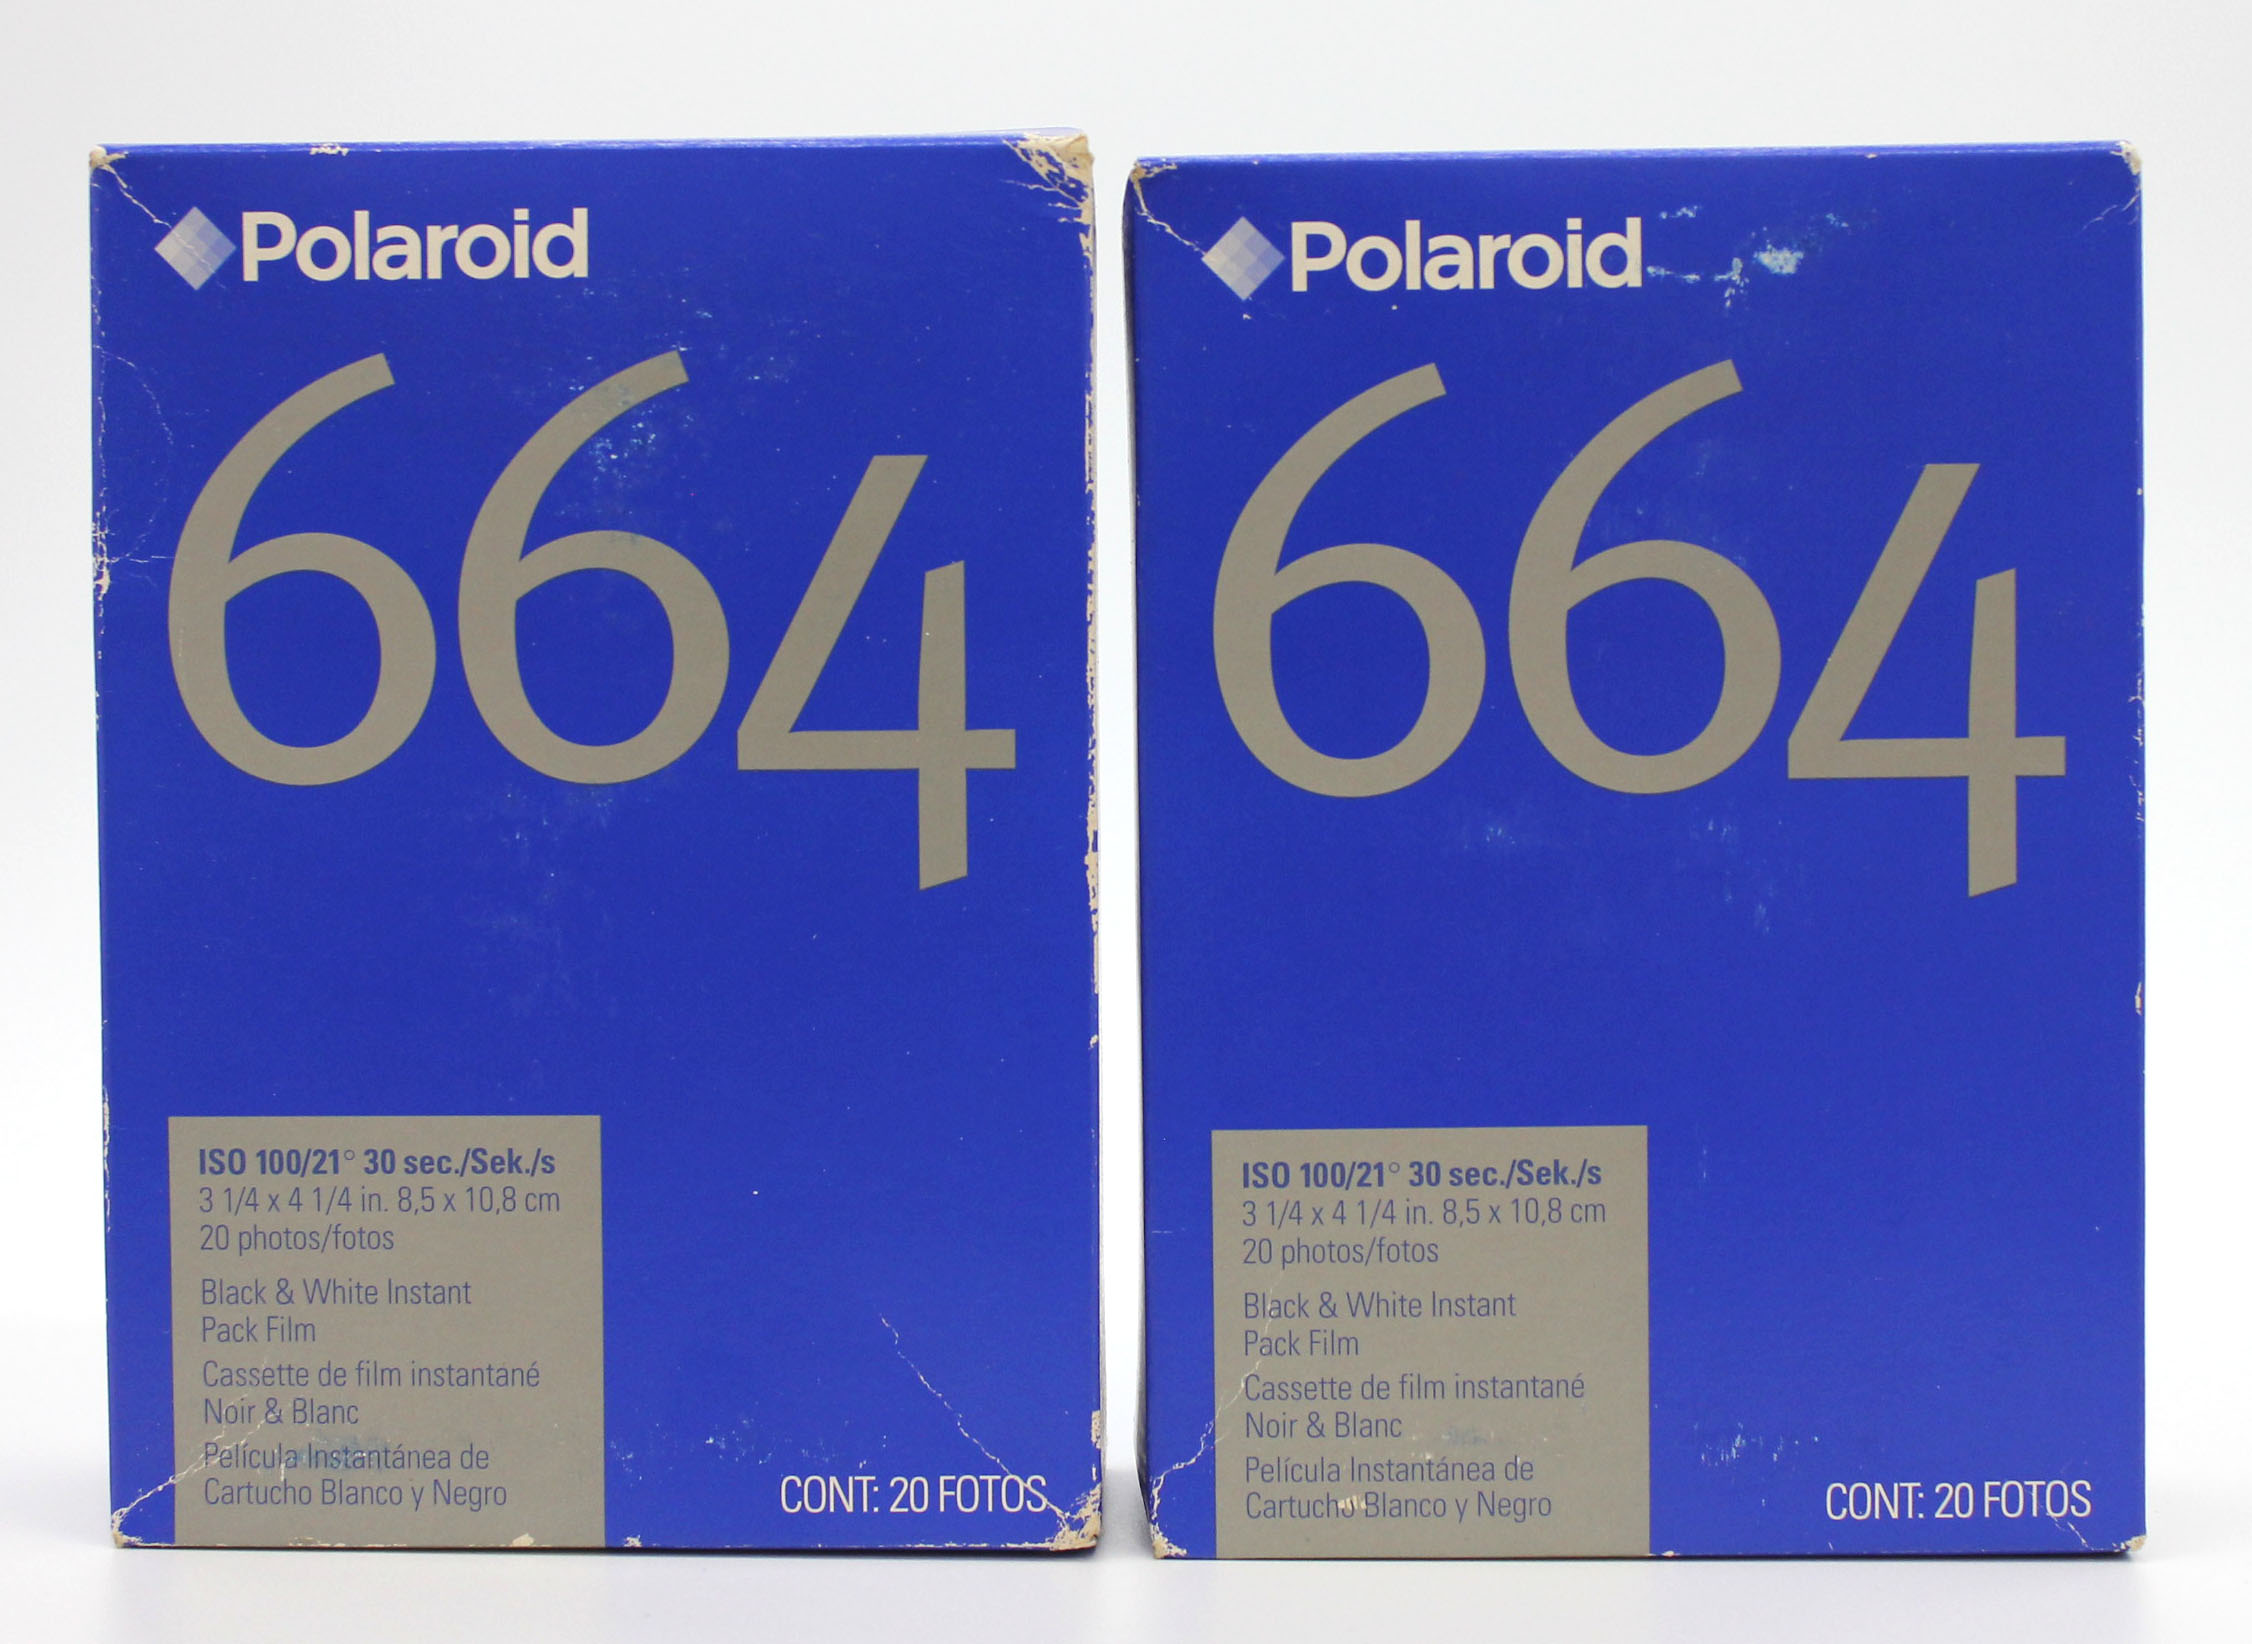 [New] Polaroid 664 B&W Black & White Instant Pack Film (2 Packs) Type 100 Expired 09/04 from Japan